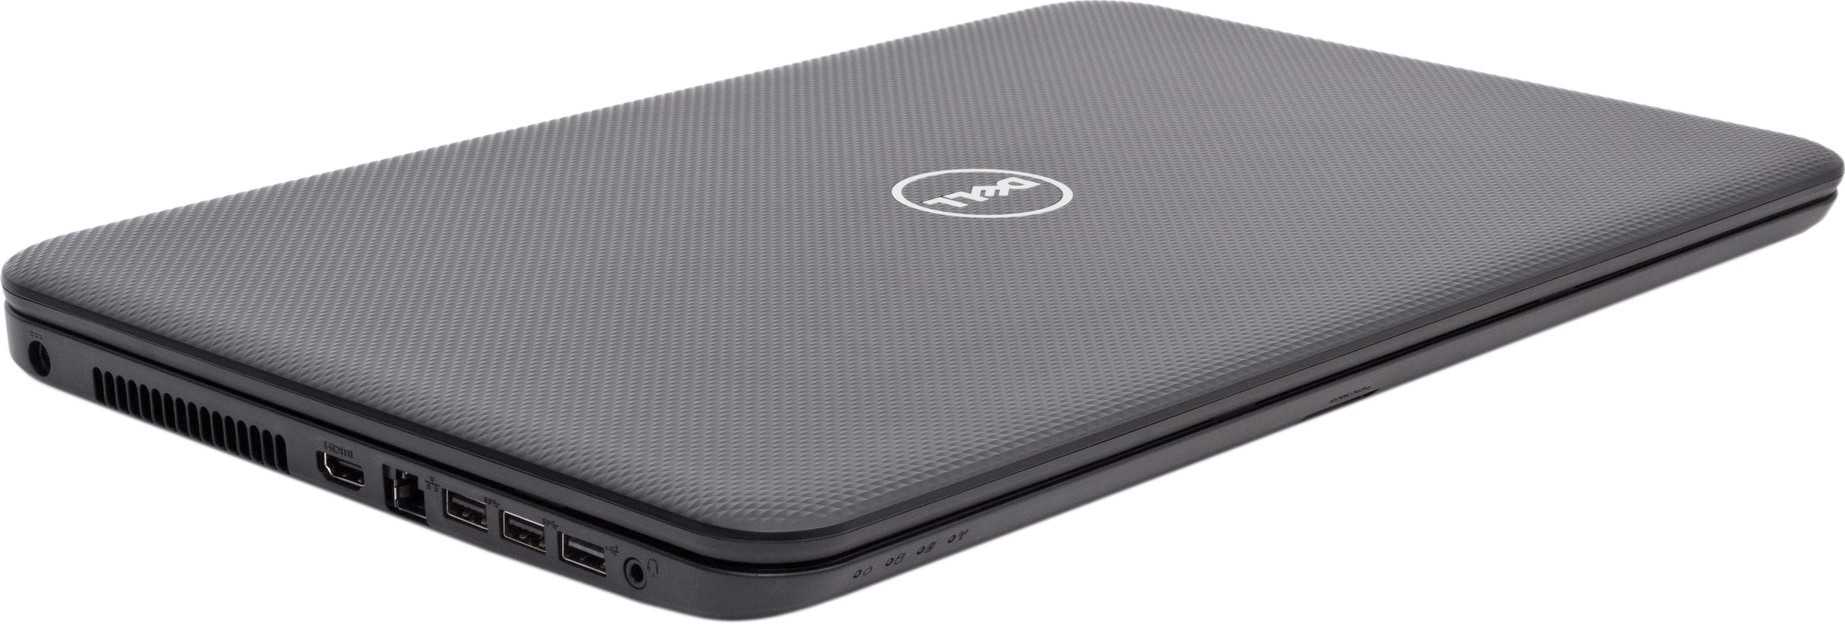 Ноутбук Dell Inspiron 3721 (I37P45DIL-13) - подробные характеристики обзоры видео фото Цены в интернет-магазинах где можно купить ноутбук Dell Inspiron 3721 (I37P45DIL-13)